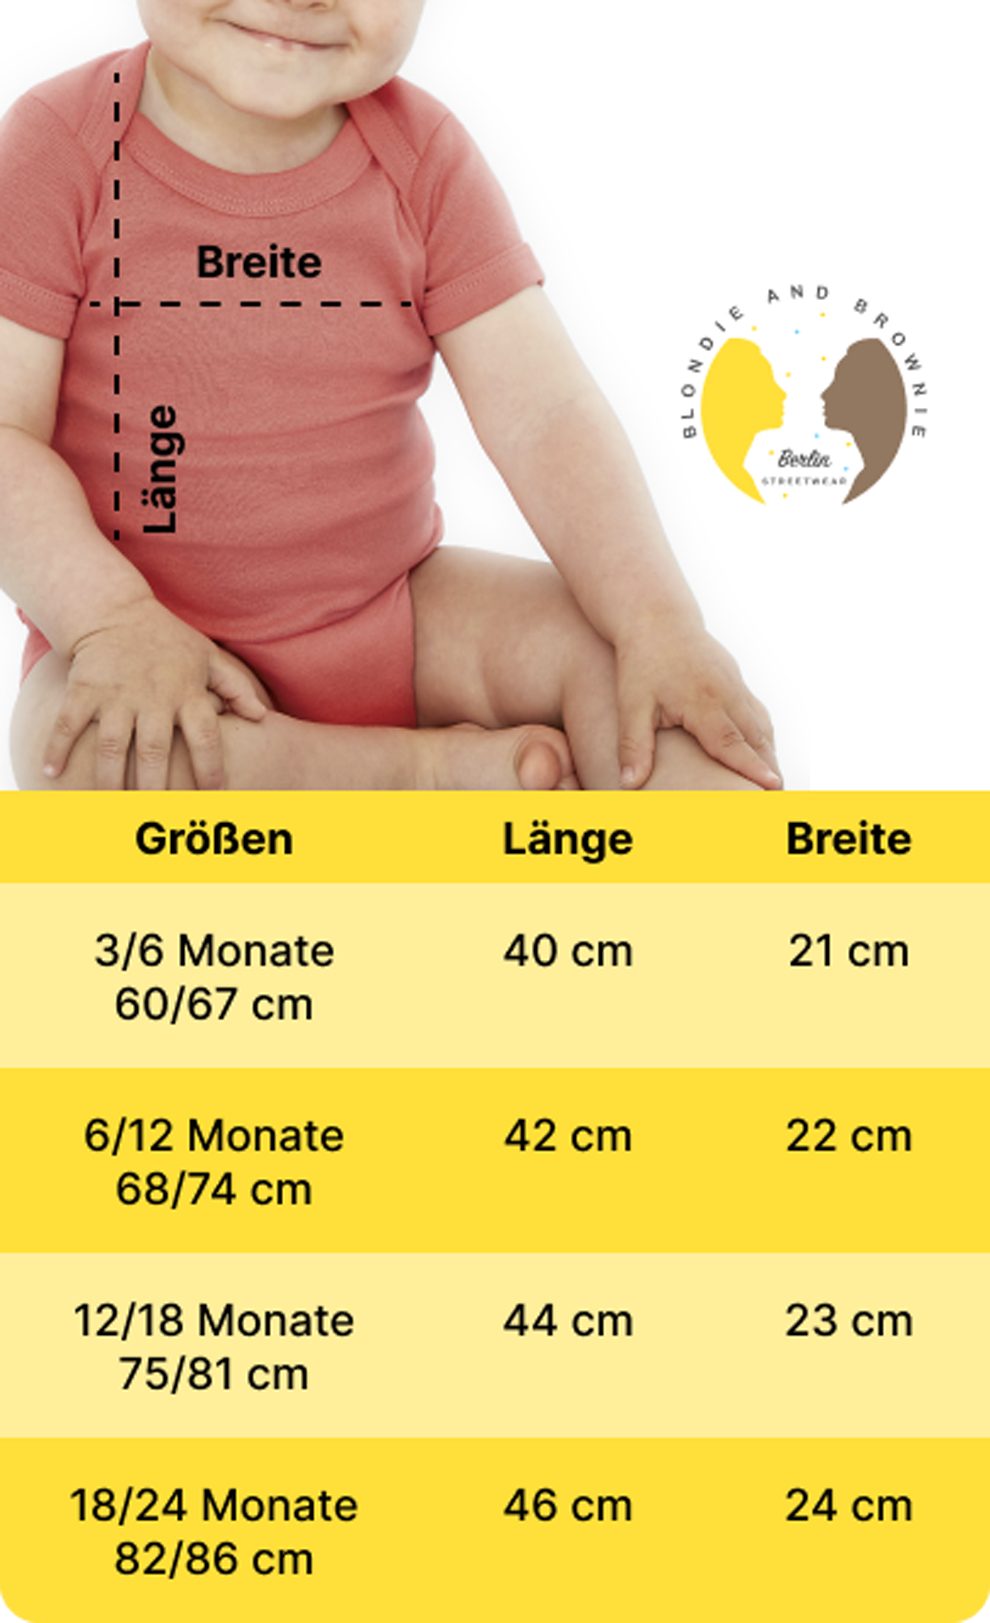 Blondie Germany Fussball EM Trikot Body Deutschland Kinder Meister Gold/Weiss Sport Brownie Strampler & Baby